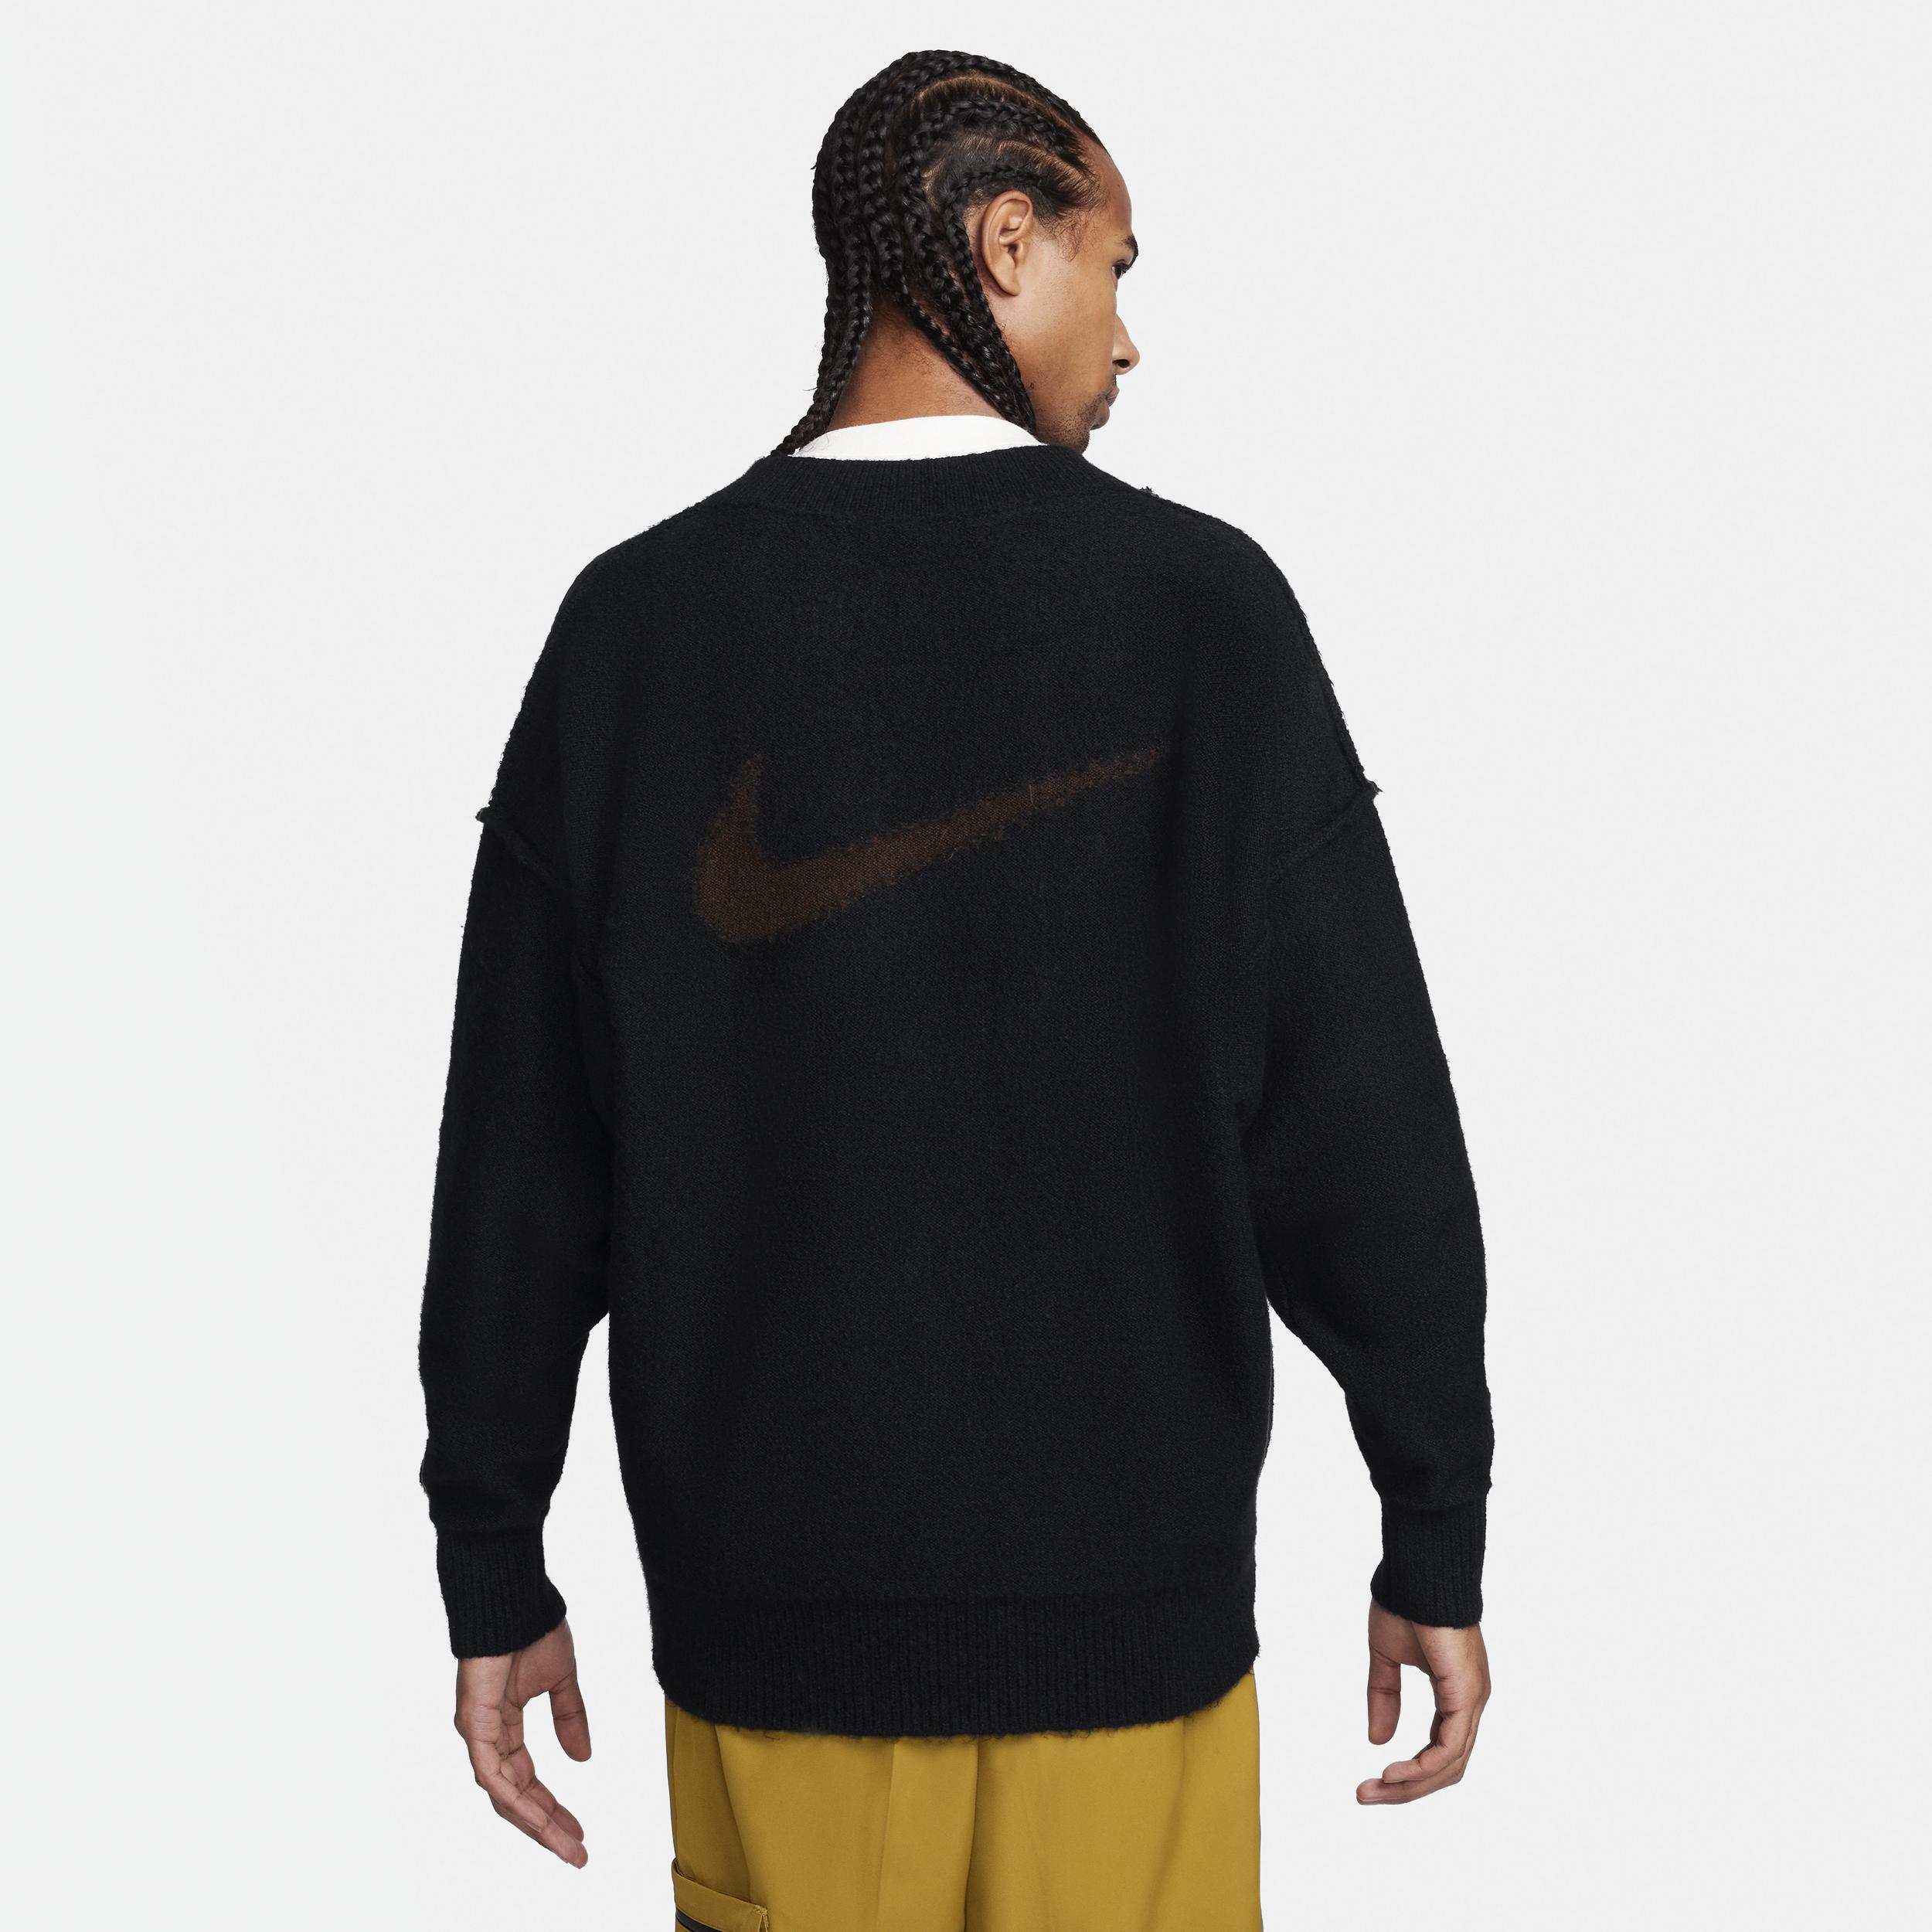 Men's Nike Sportswear Tech Pack Knit Sweater  Product Image